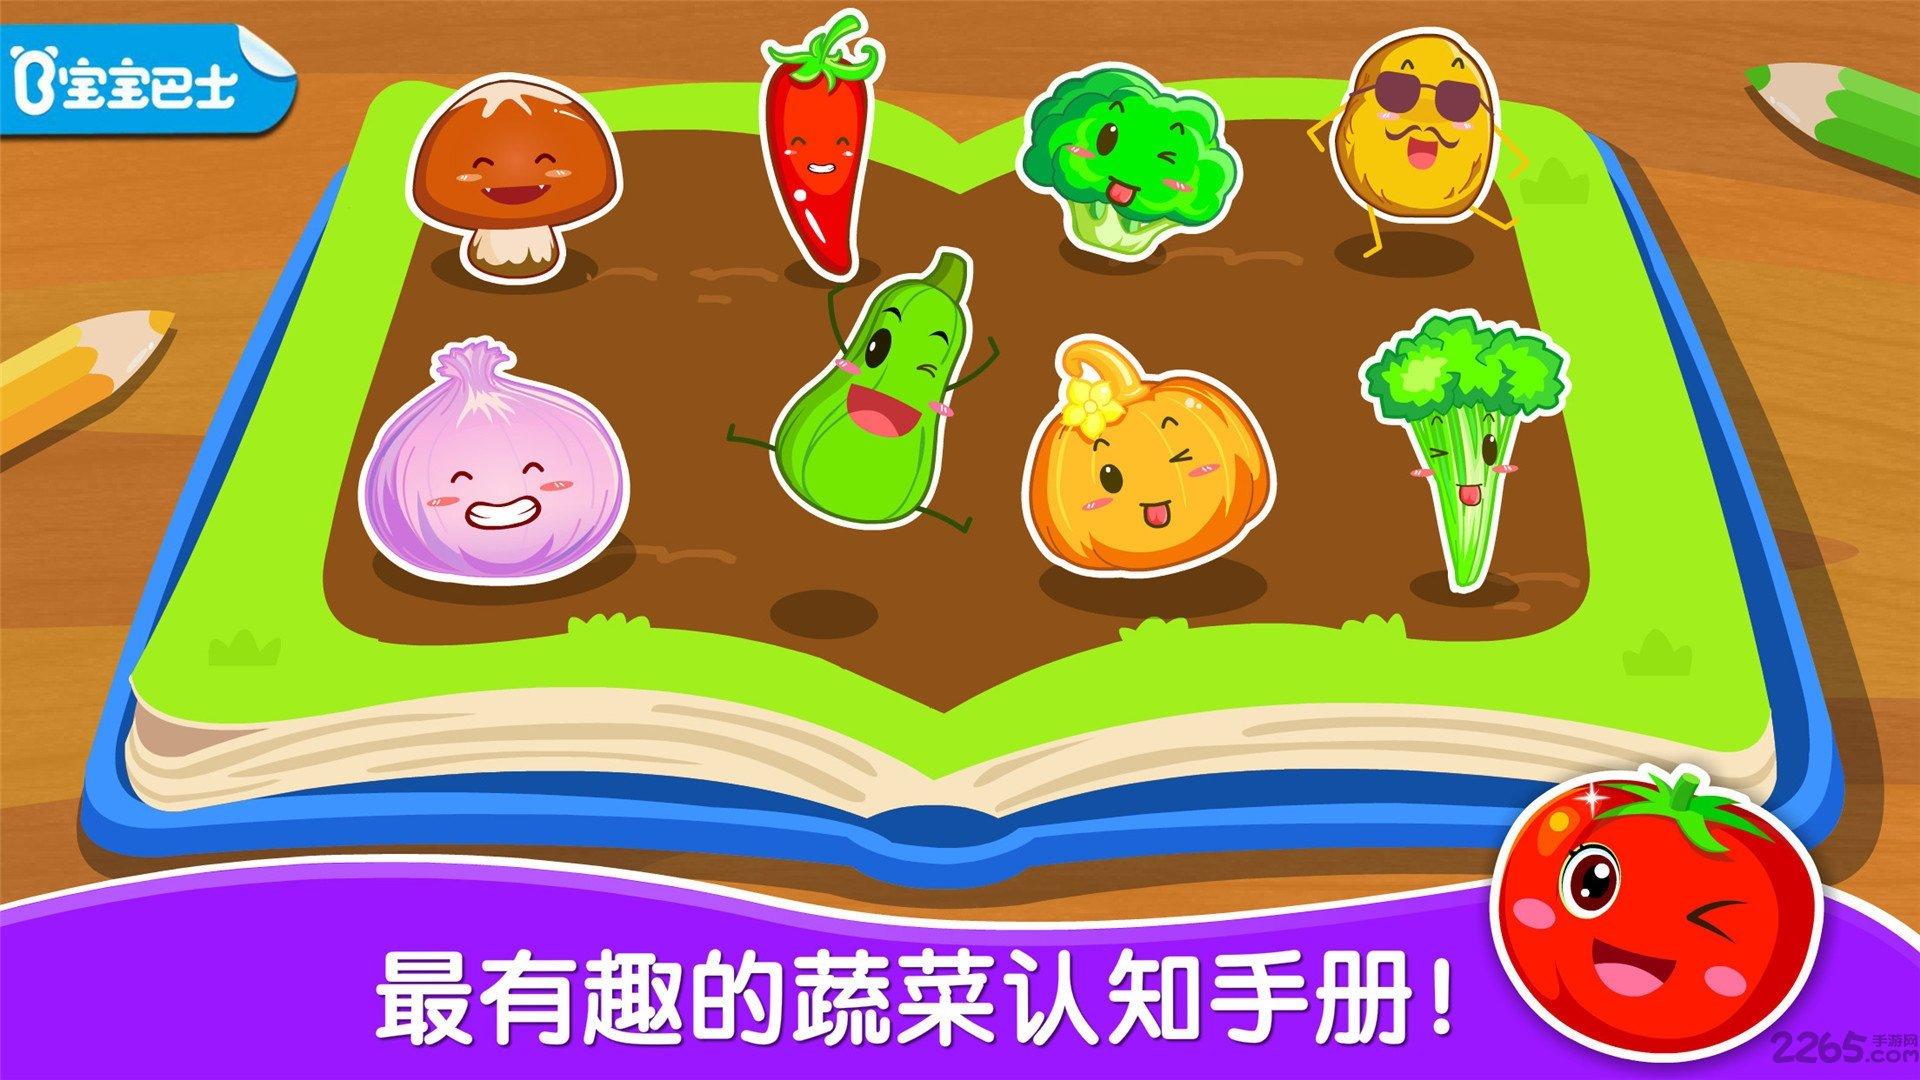 宝宝学蔬菜游戏(改名宝宝爱蔬菜)游戏截图2